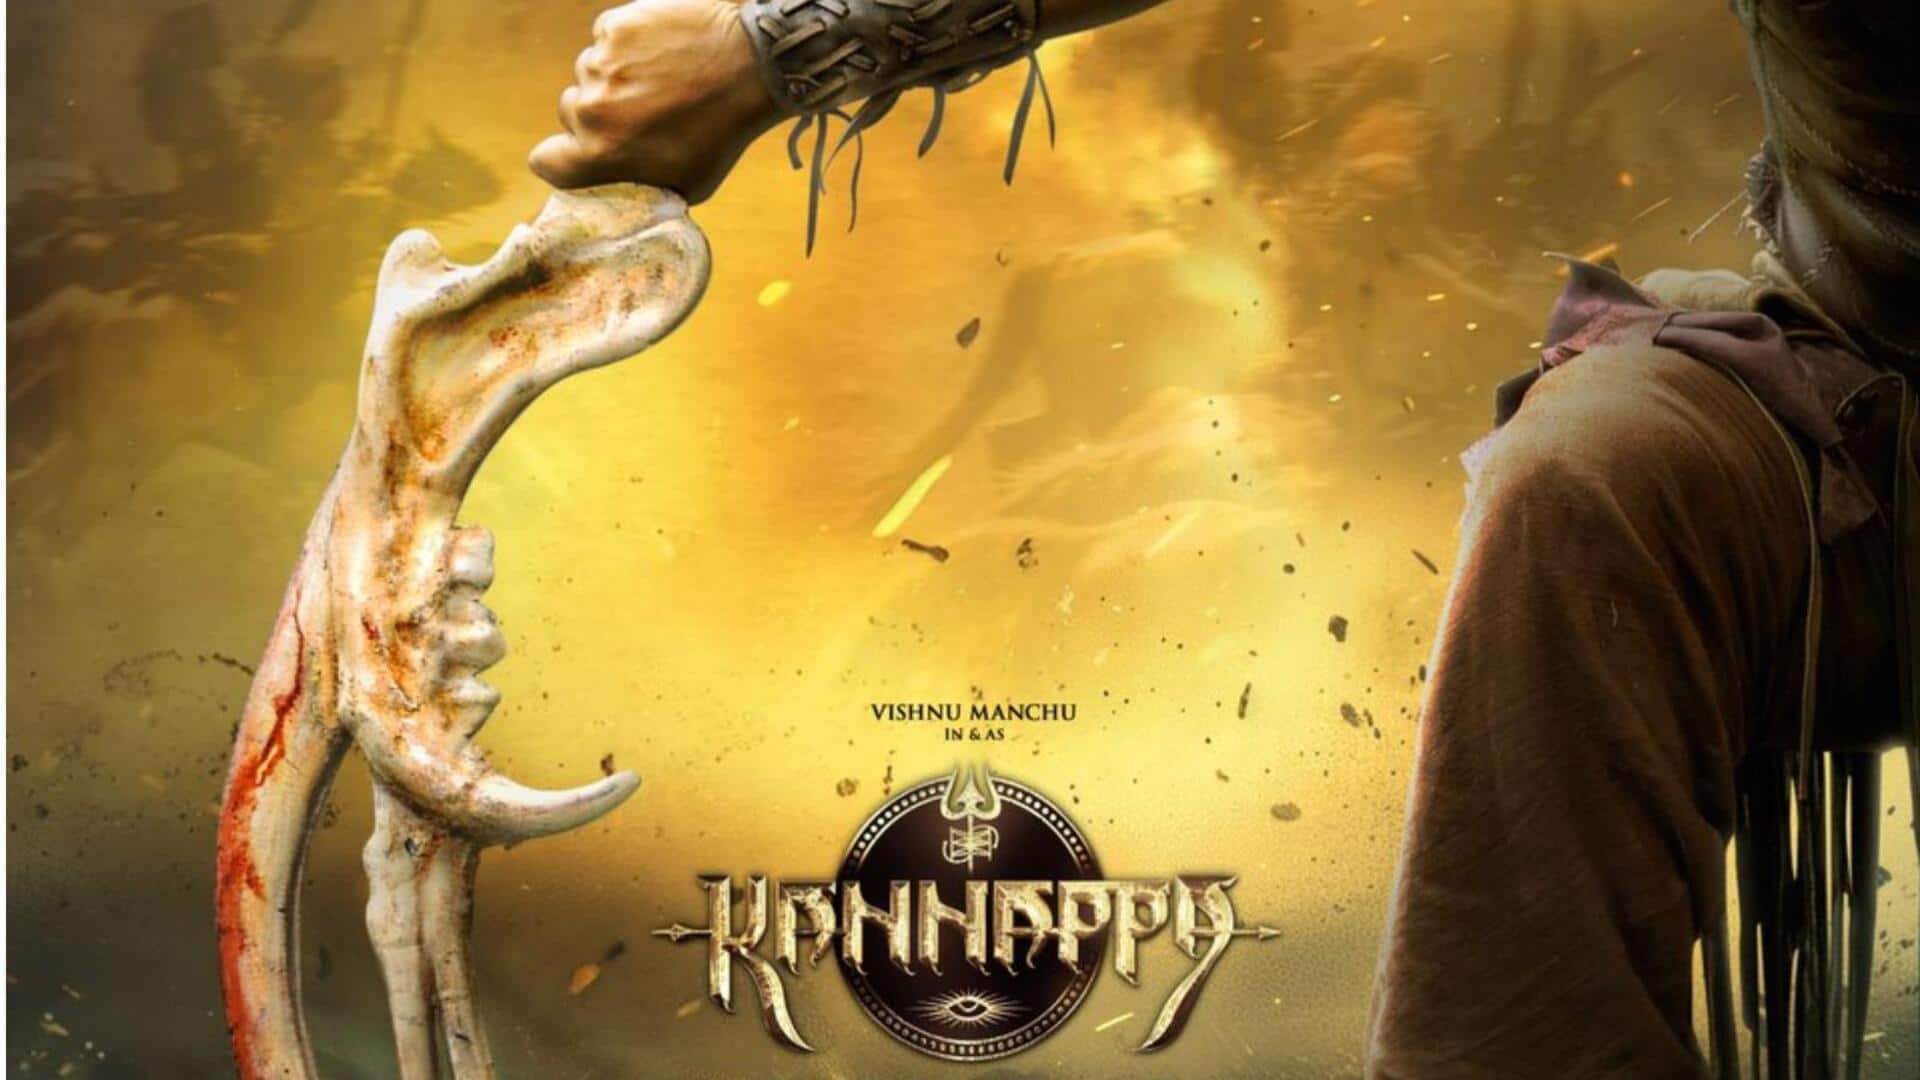 कान्स फिल्म फेस्टिवल में इस दिन रिलीज होगा 'कन्नप्पा' का टीजर, नया पोस्टर जारी